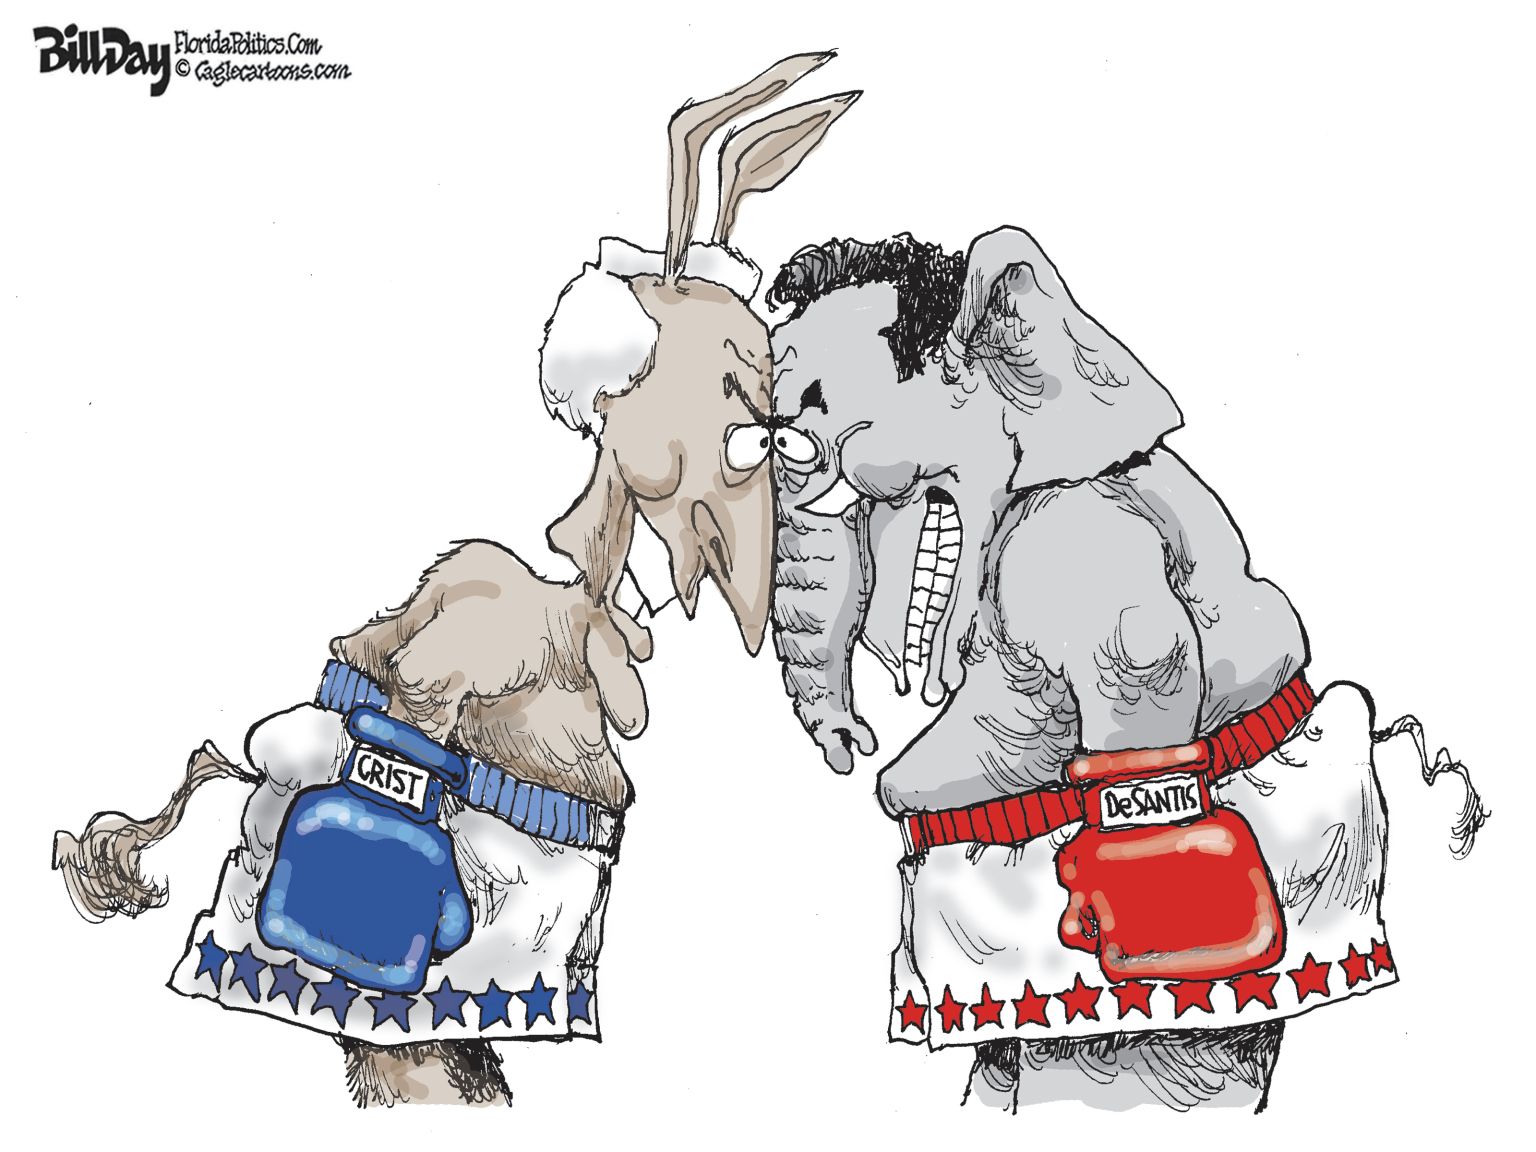 FLORIDA Big Fight - newsjustin.press - editorial cartoon